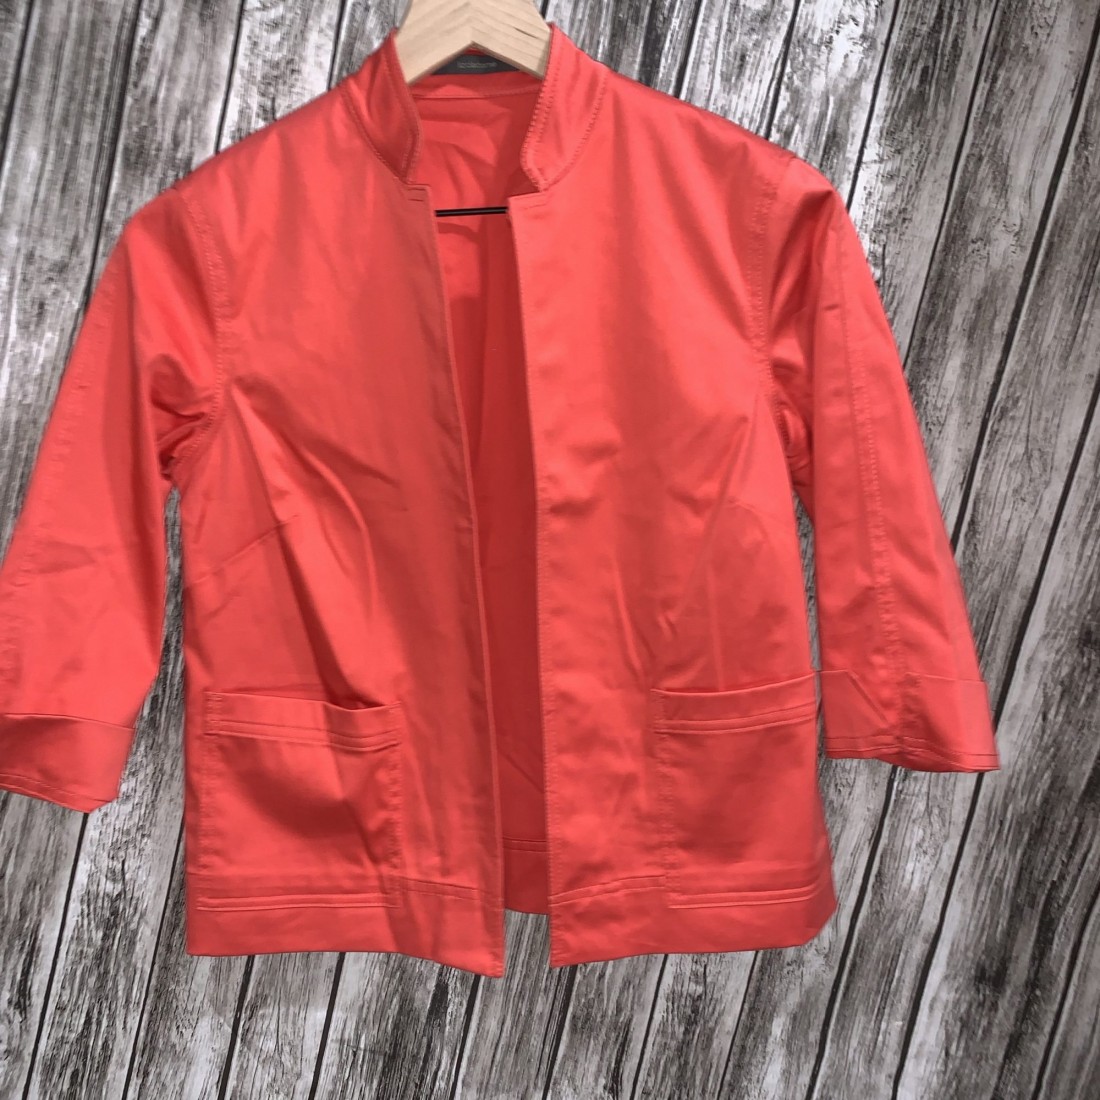 Coral Women's Blazer Jacket Petite